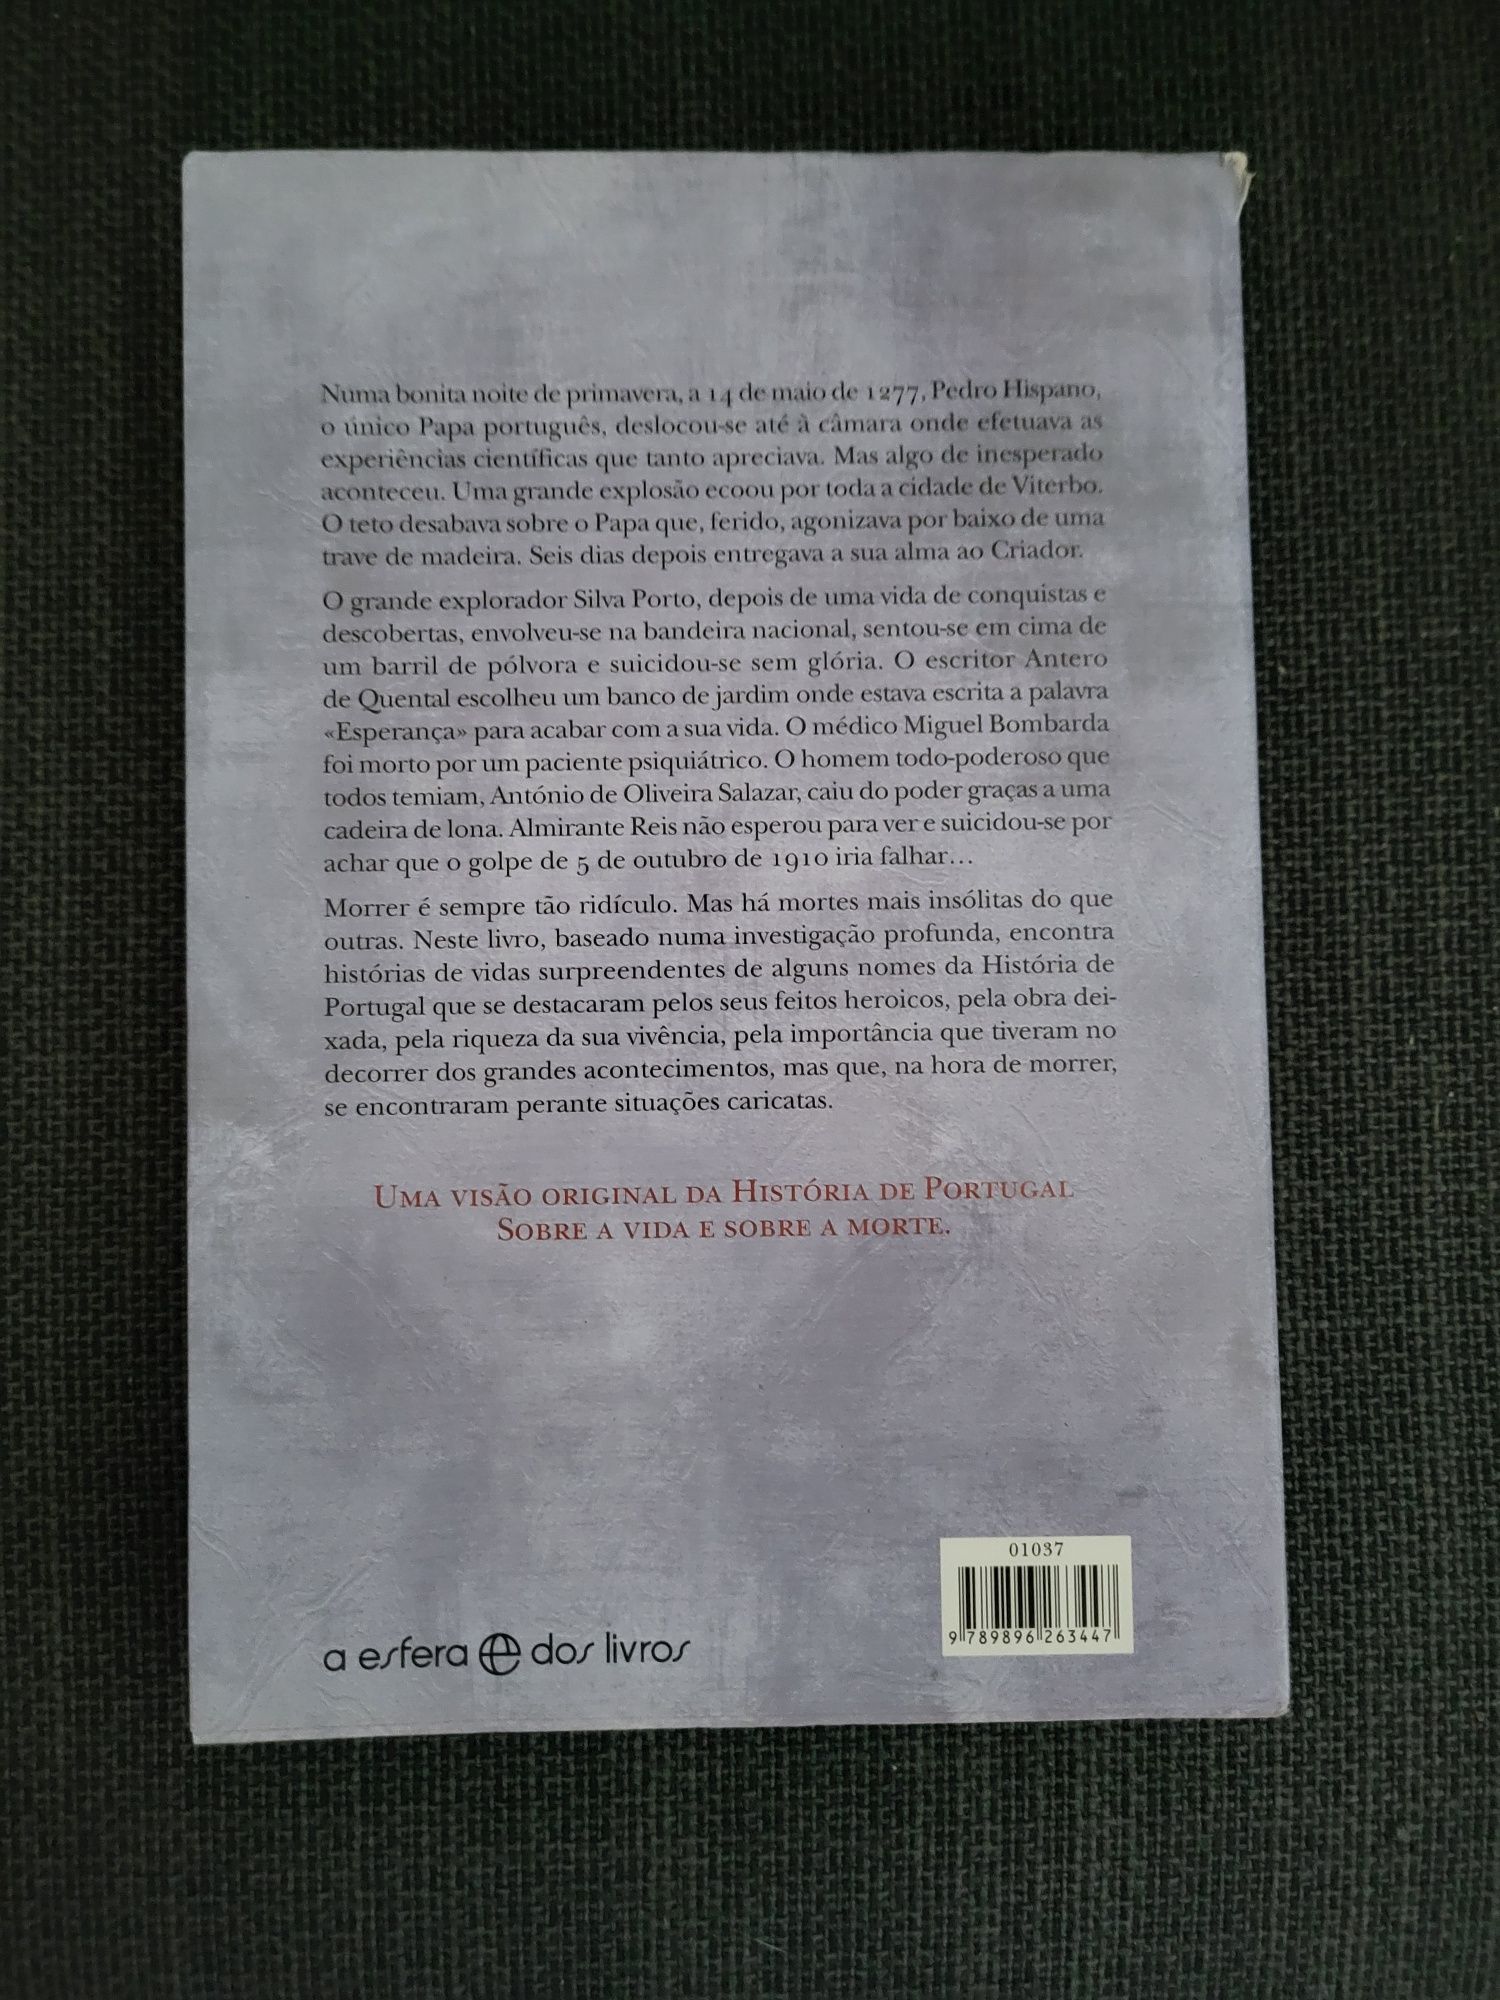 Livro "Vidas Surpreendentes, Mortes Insólitas na História de Portugal"